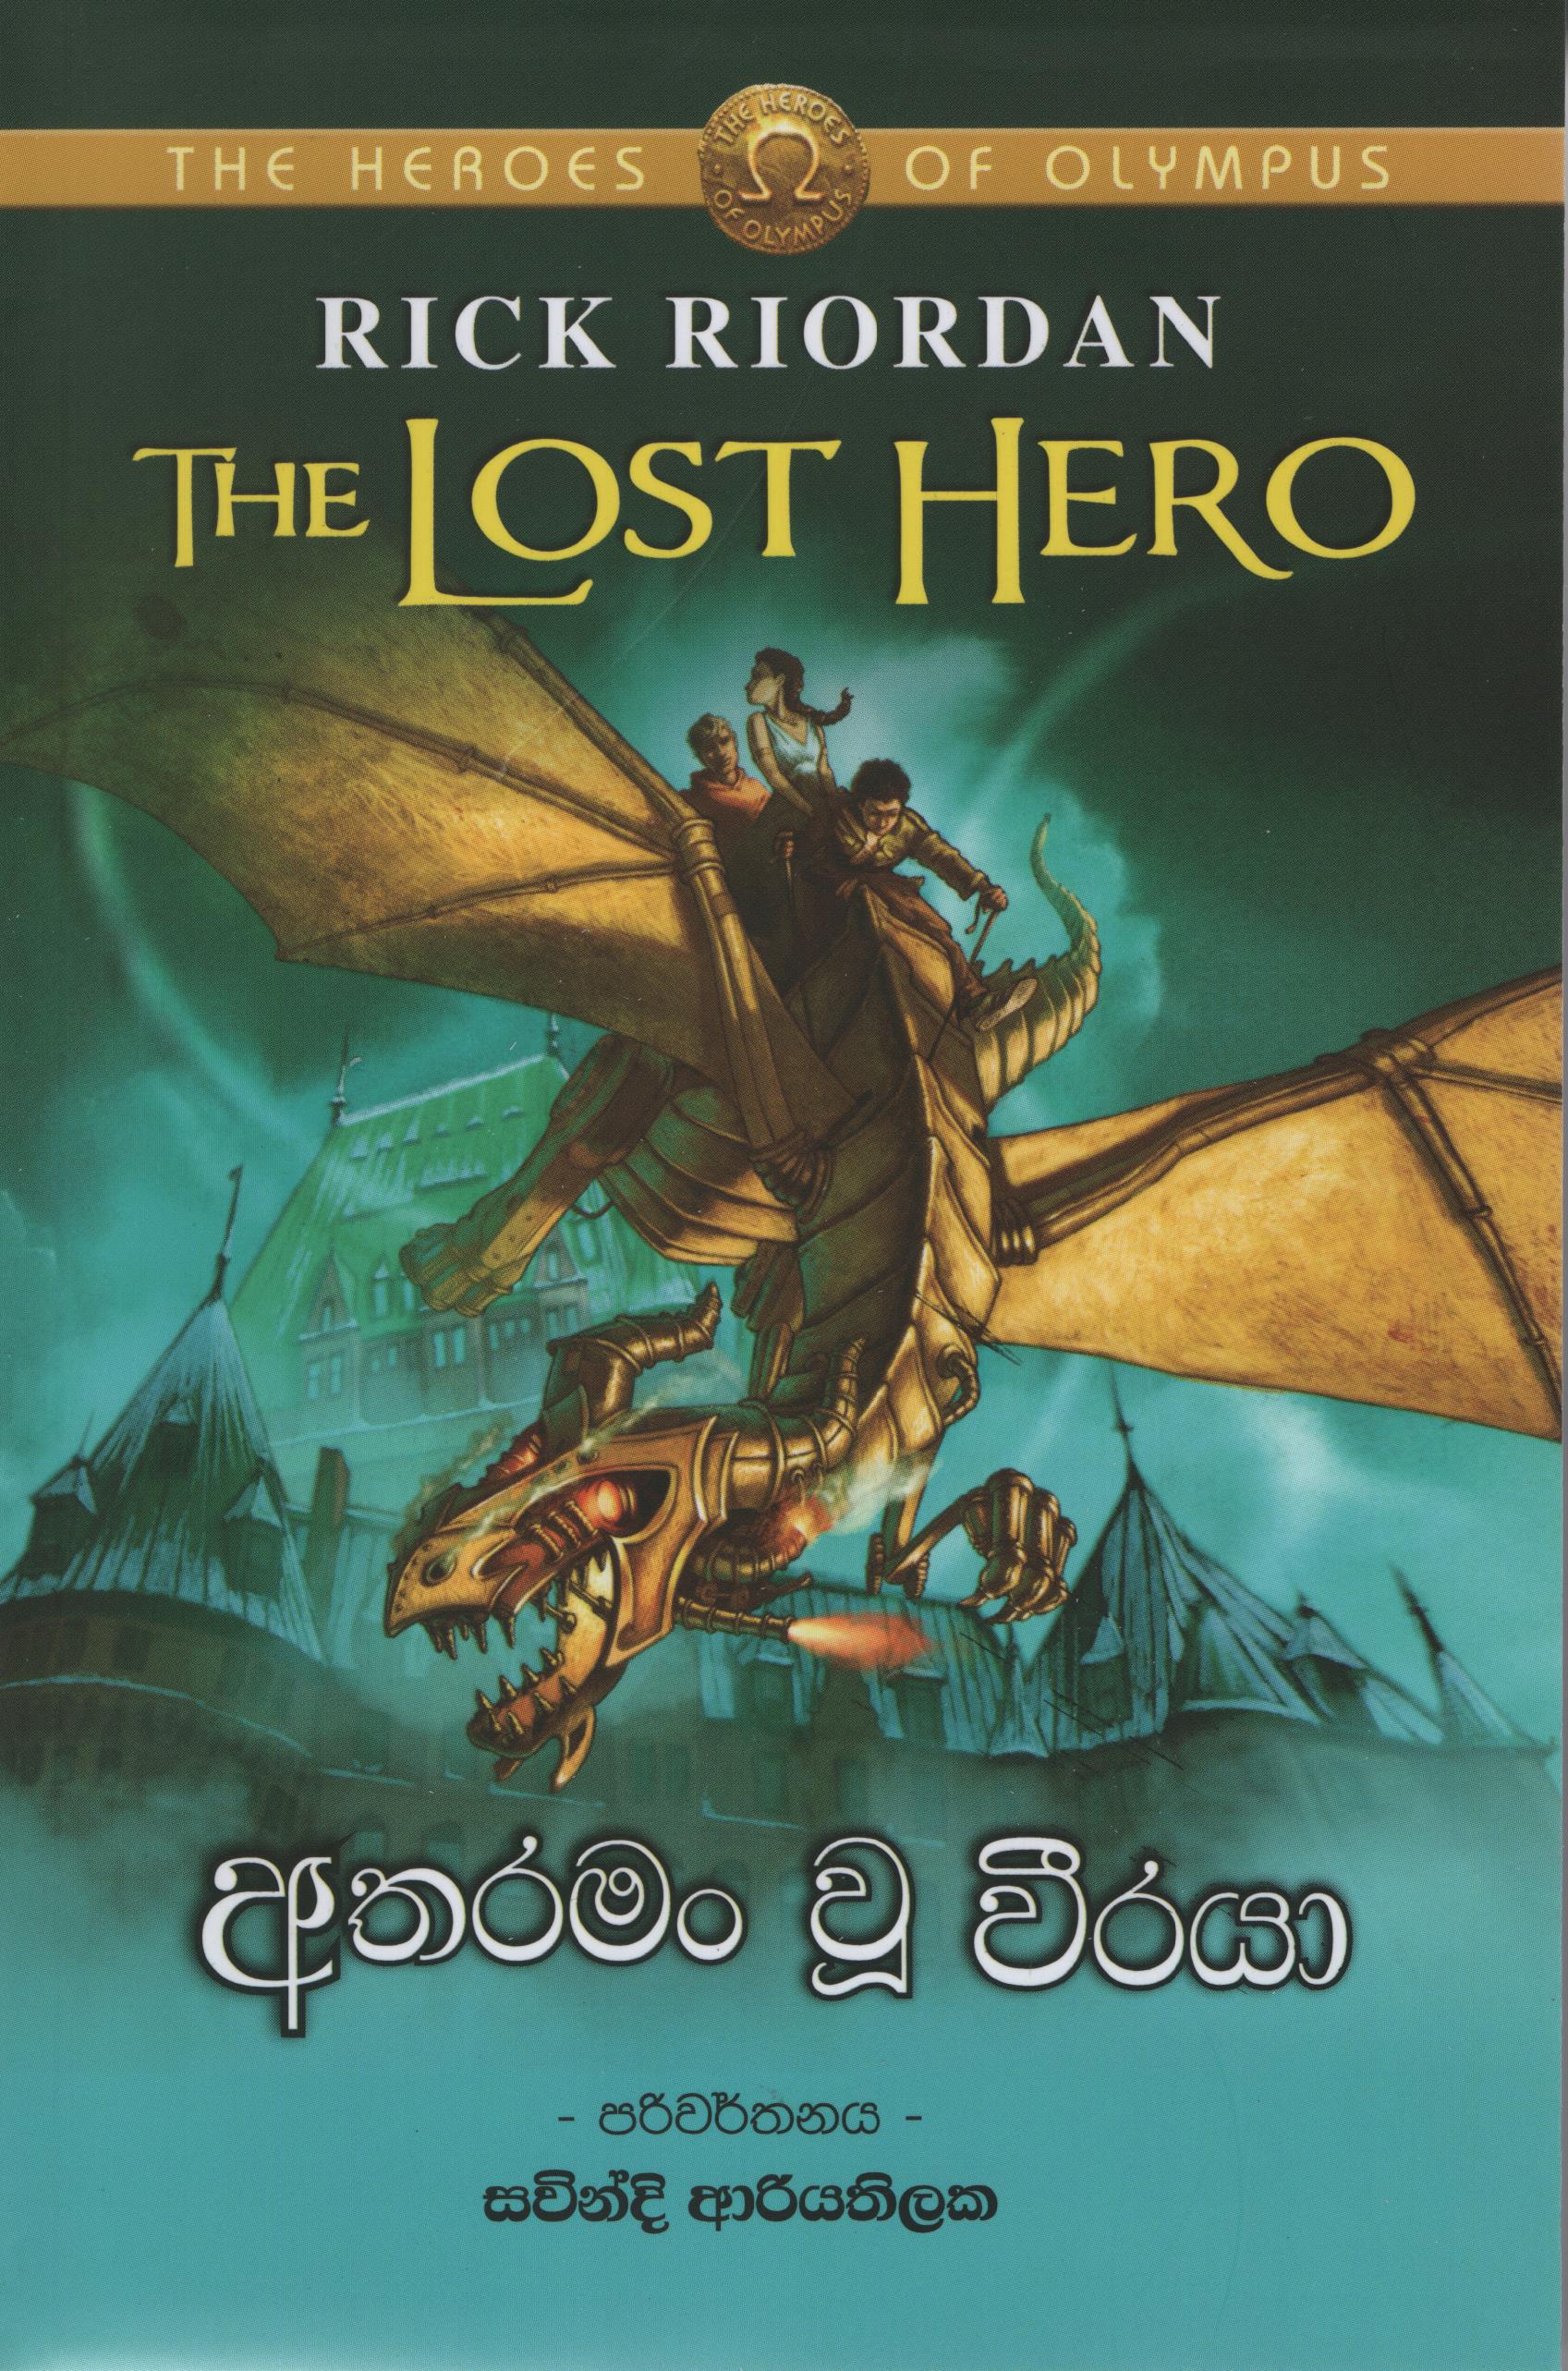 Atharaman U Veeraya - Translations of The Lost Hero by Rick Riordan